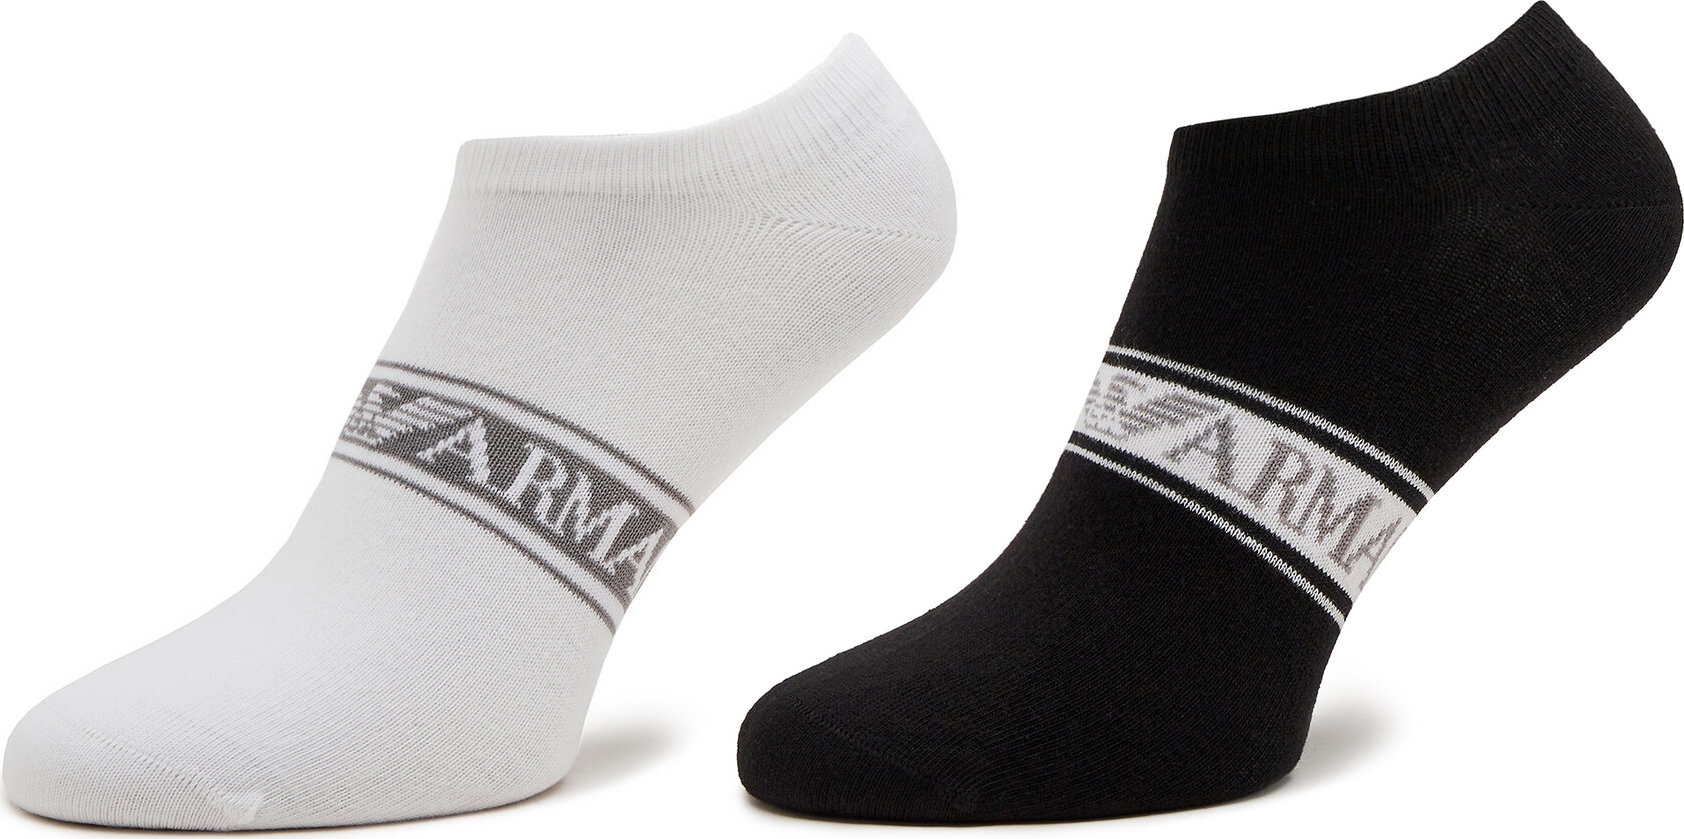 Sada 2 párů pánských ponožek Emporio Armani 307228 4R315 00911 Bianco/Nero